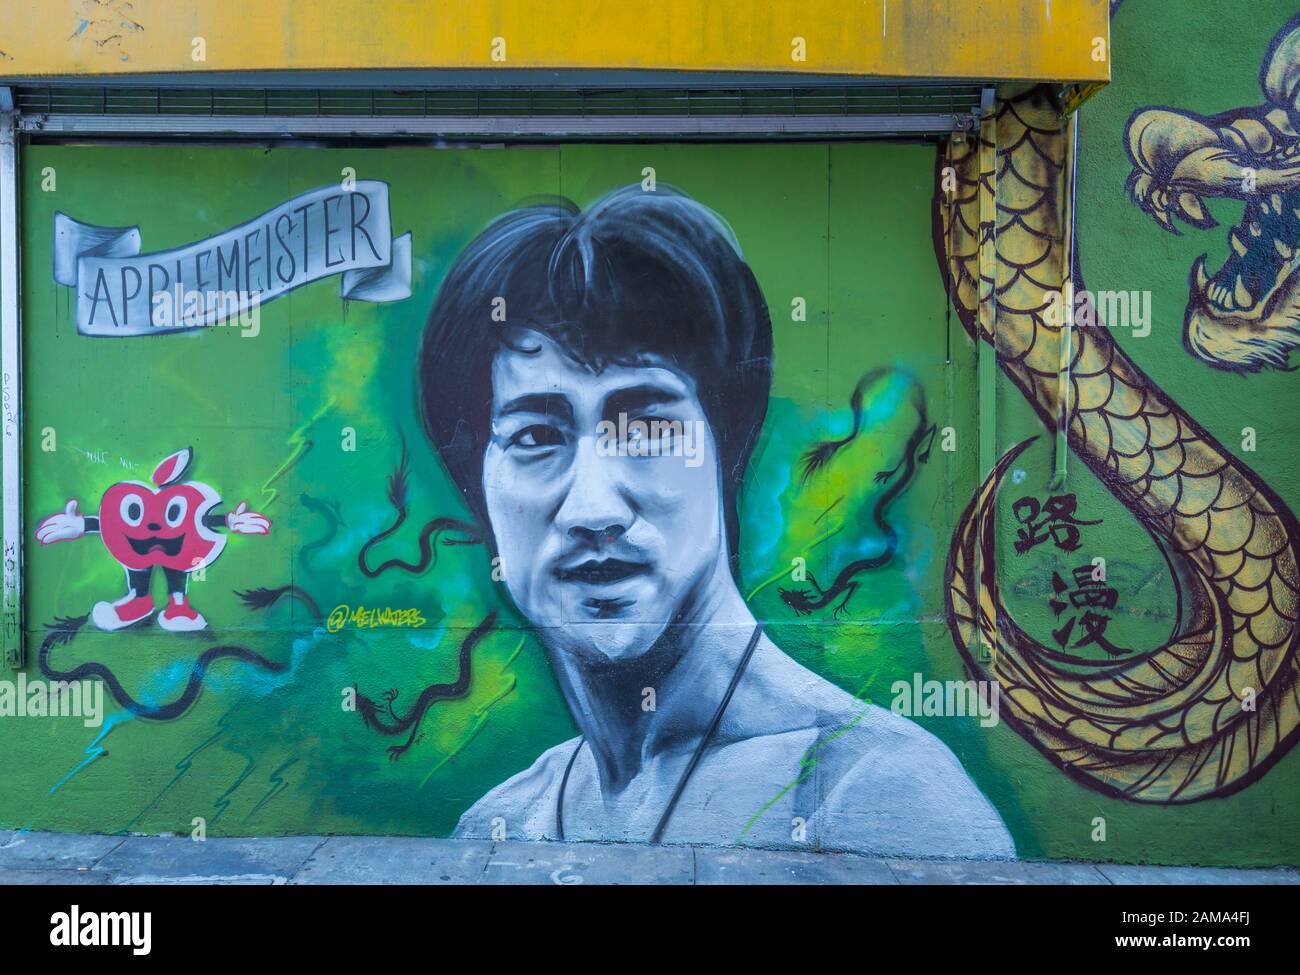 Vue sur la peinture murale de Bruce Lee à Chinatown, San Francisco, Californie, États-Unis d'Amérique, Amérique du Nord Banque D'Images